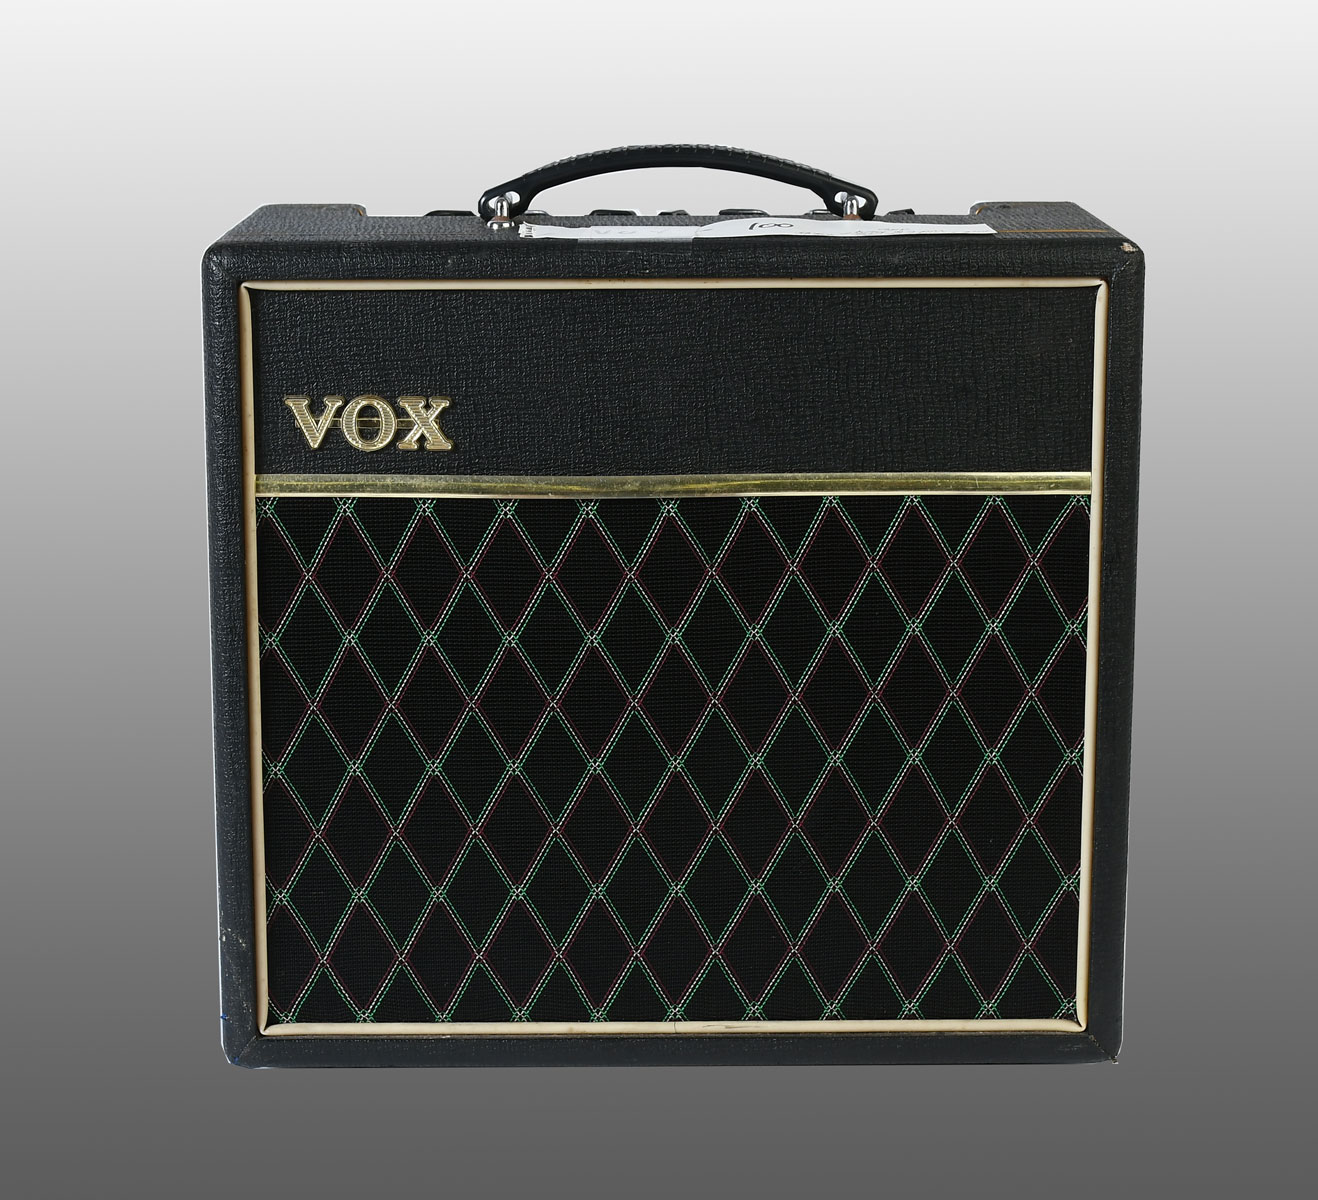 VOX PATHFINDER GUITAR AMP: 15 R Model